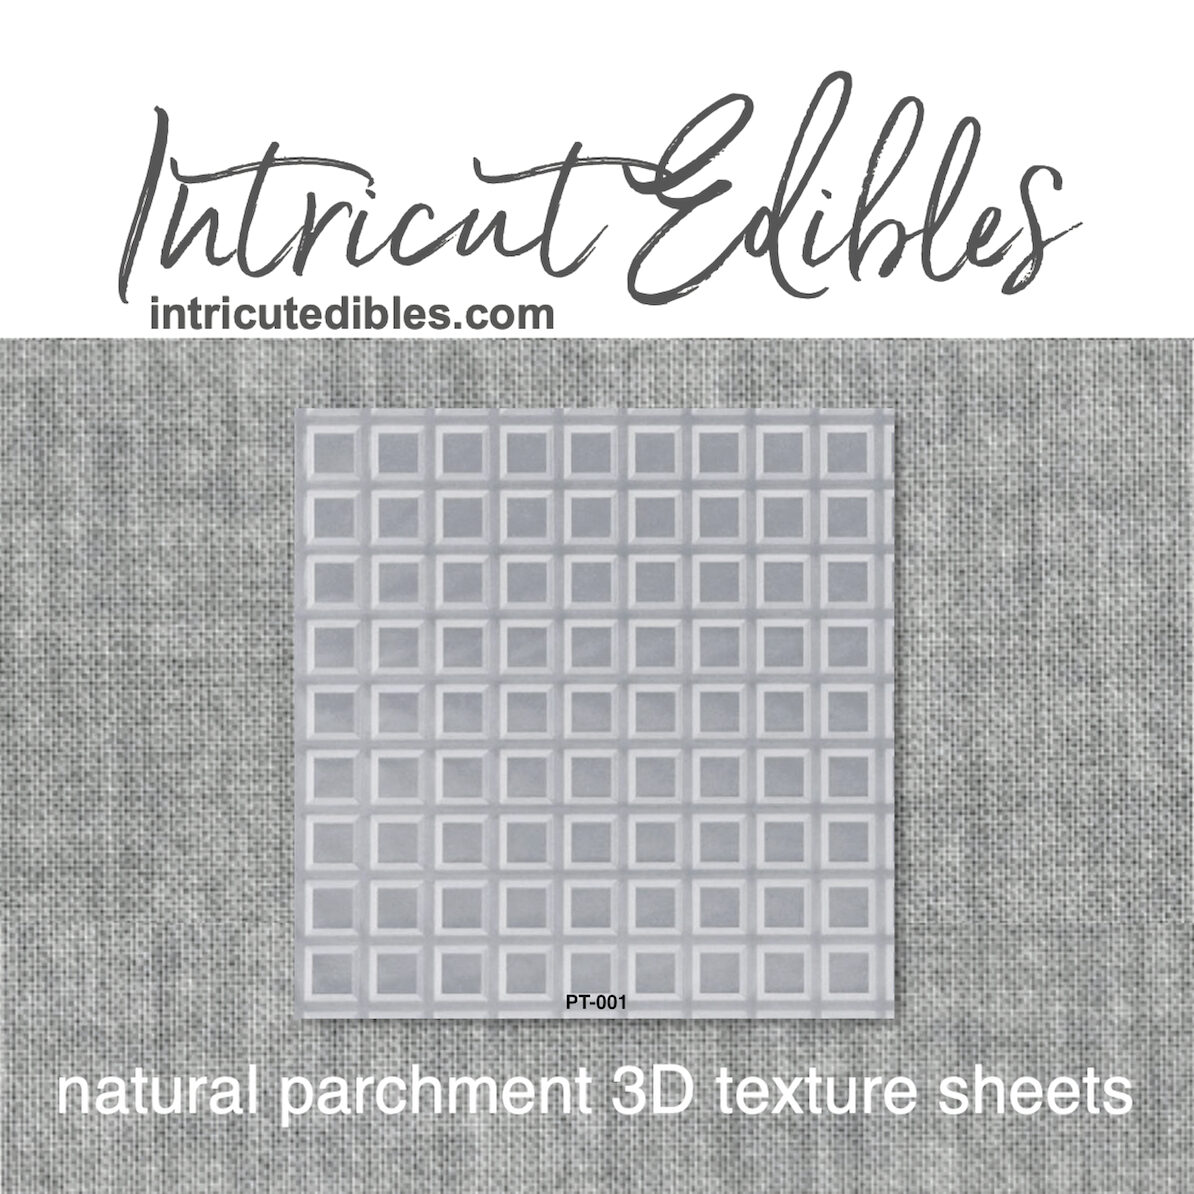 Parchment Texture Sheets - Waffle Squares - Intricut Edibles